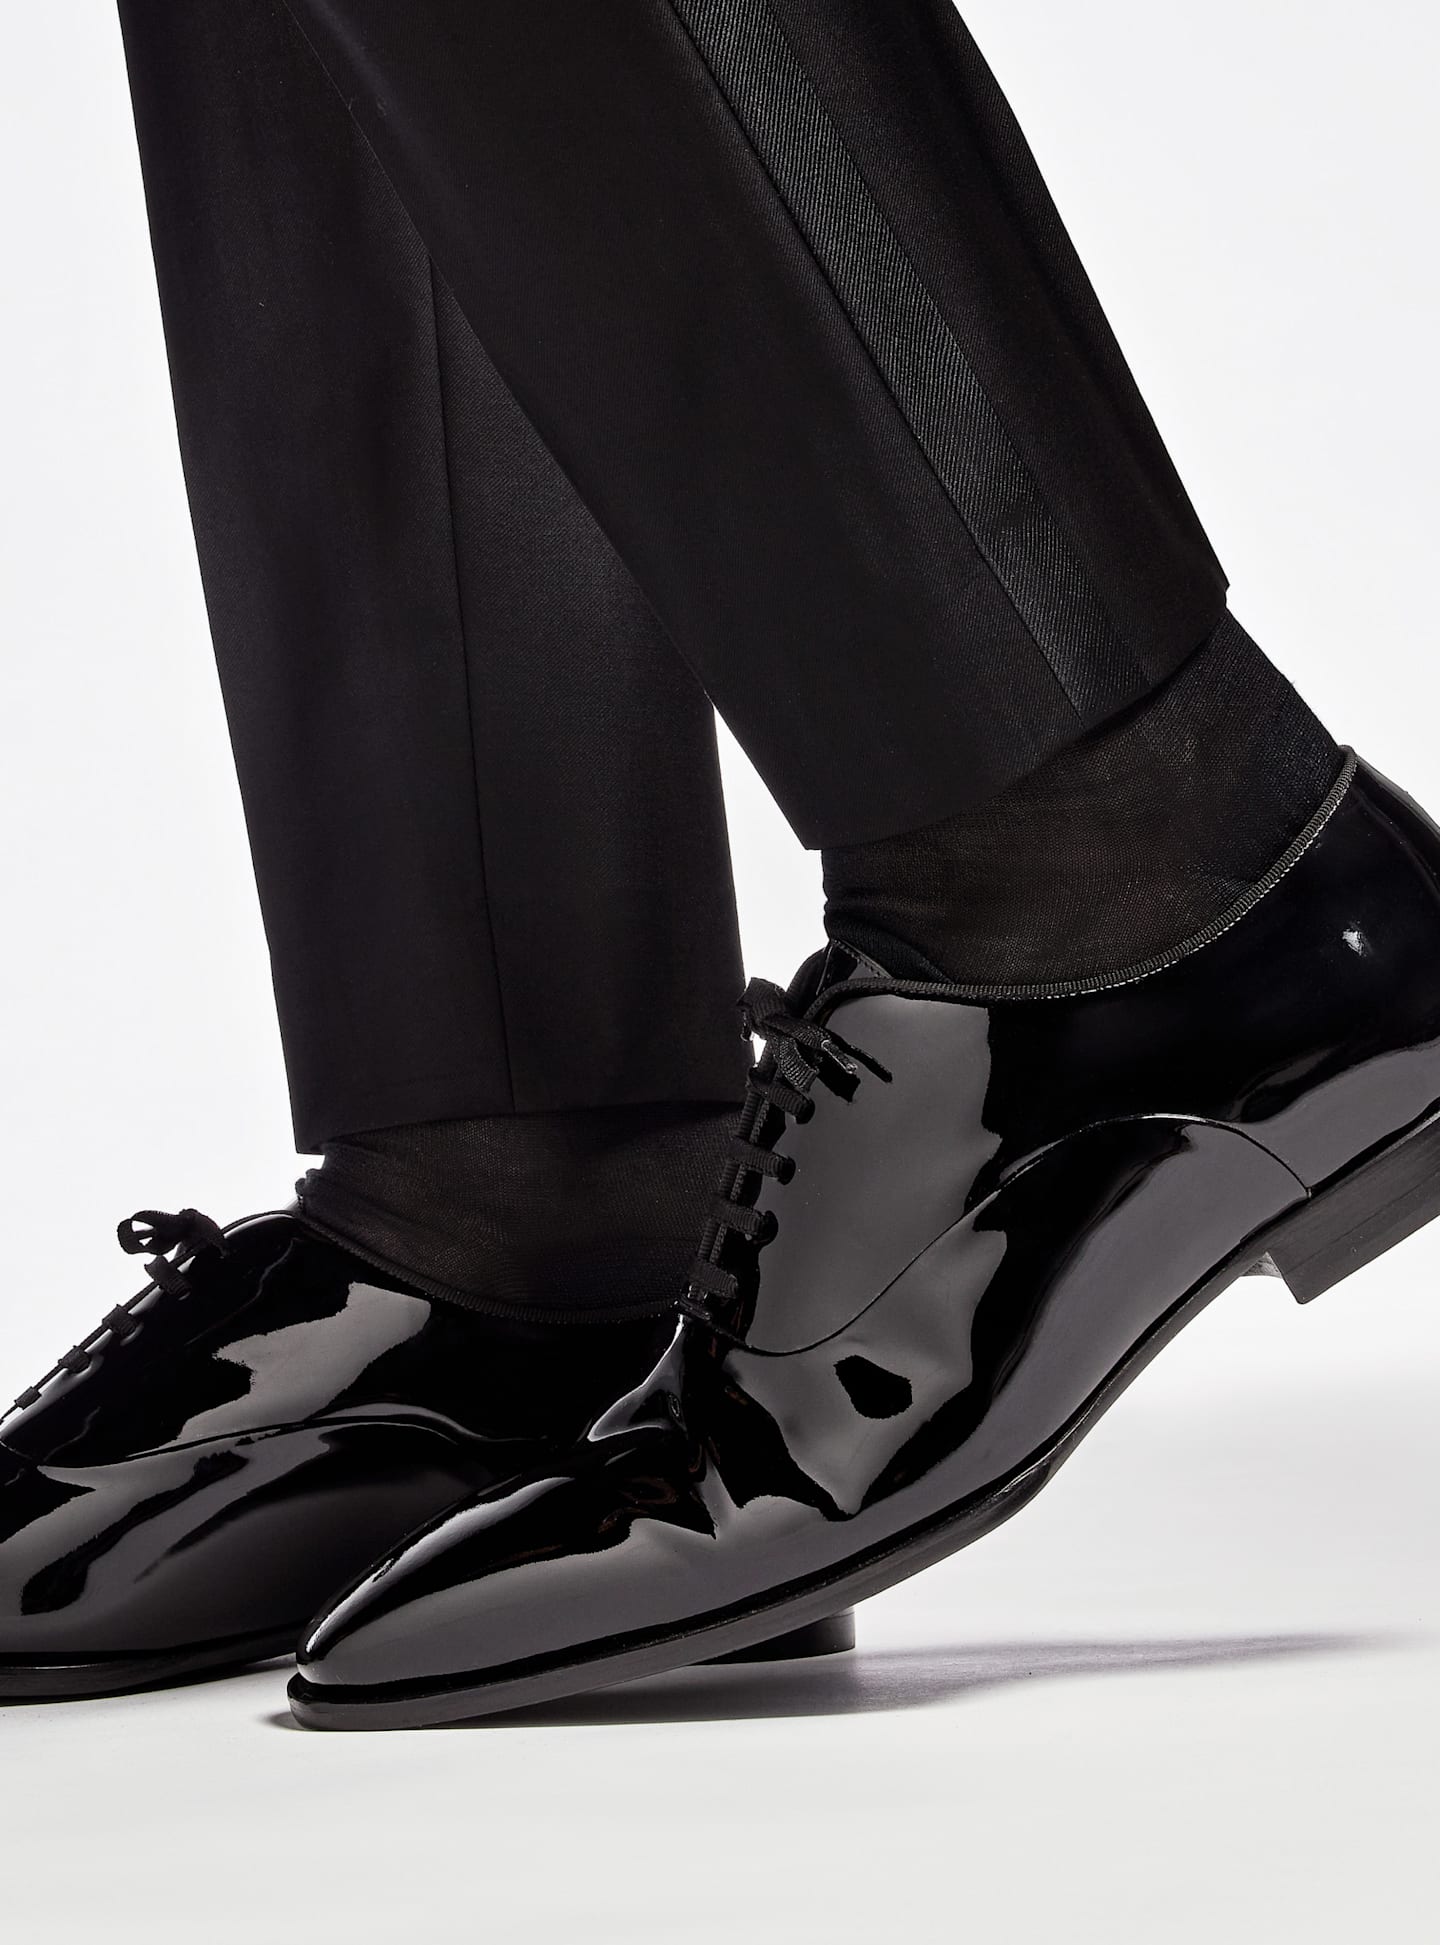 Vue de détail de chaussures de smoking en cuir verni noir.